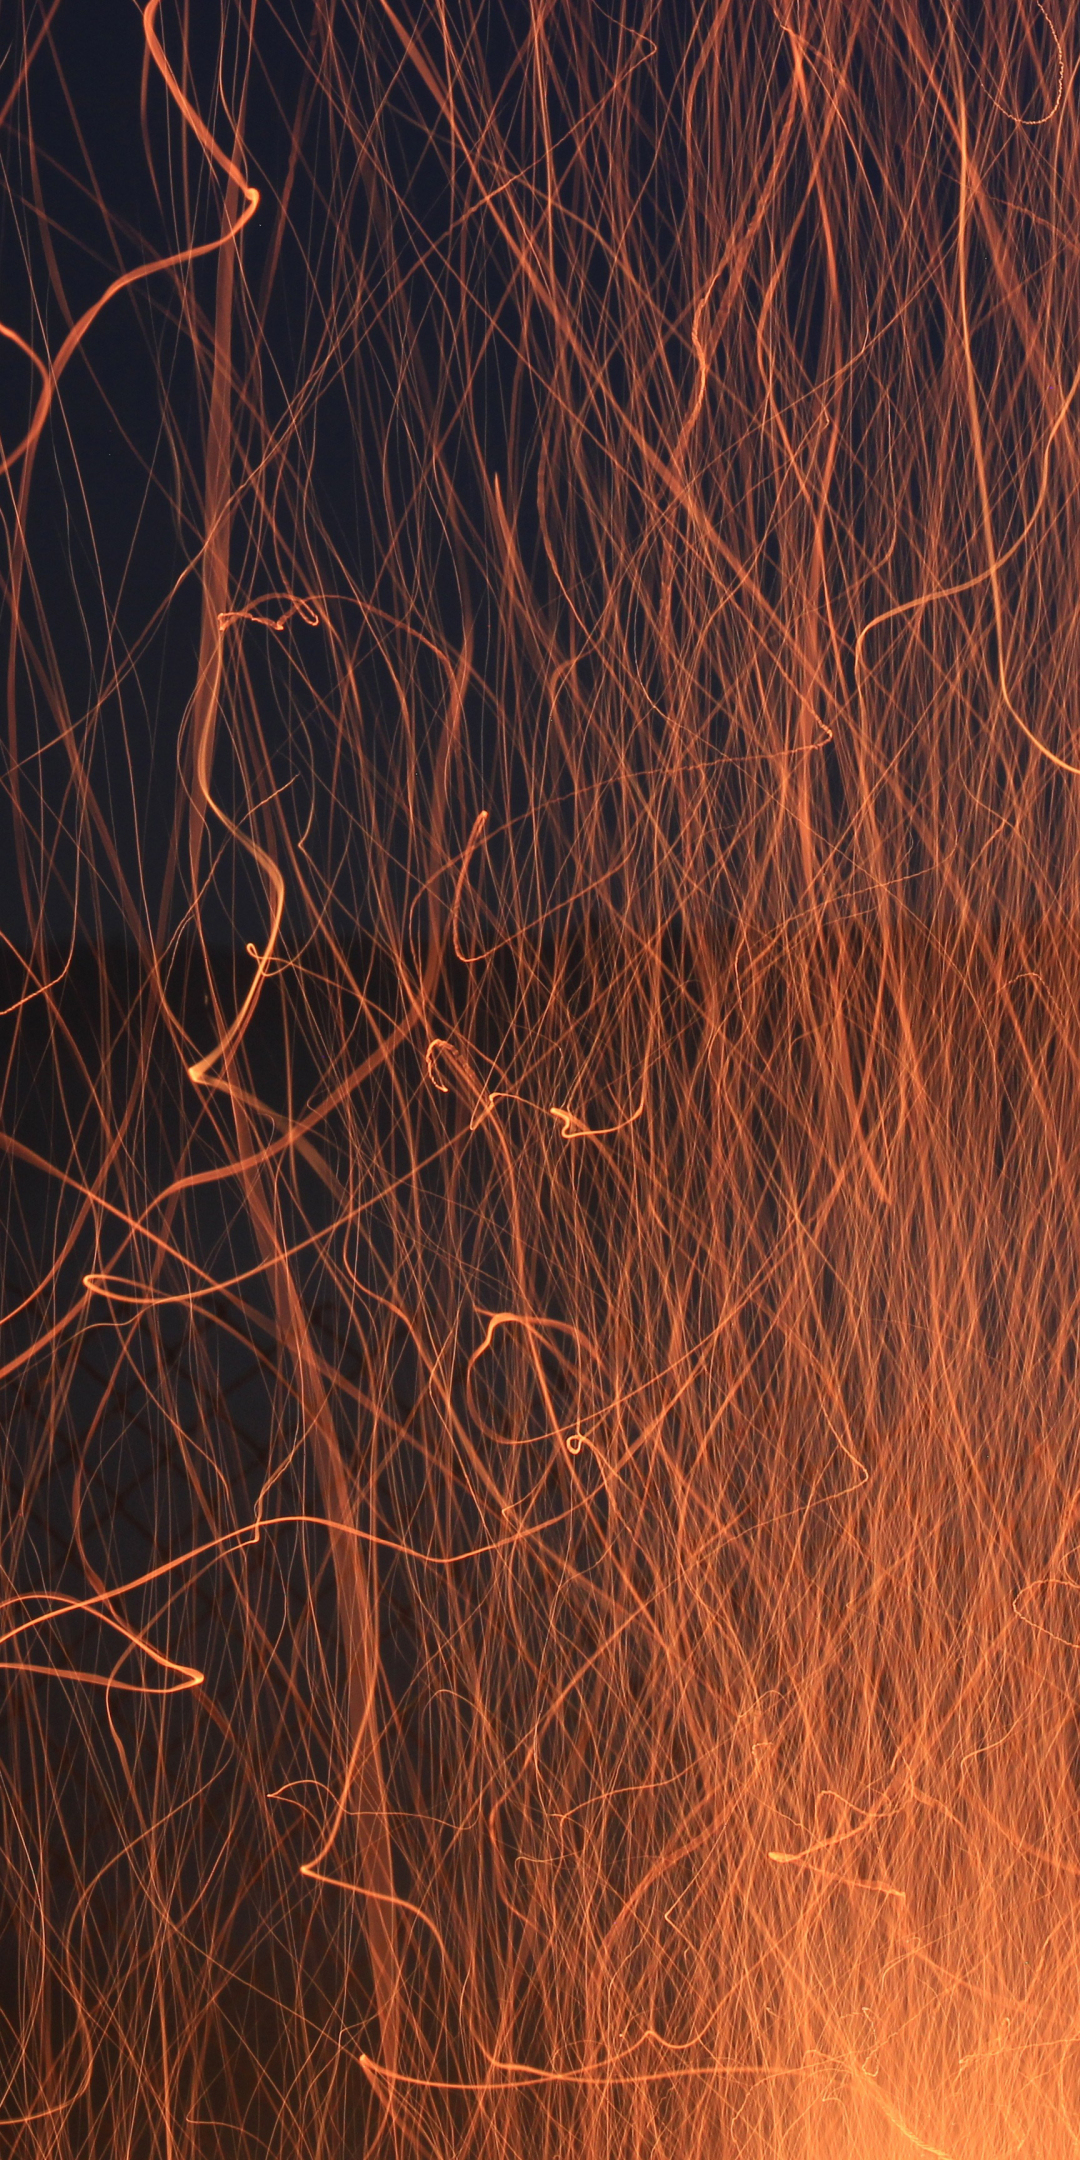 Fire flames, sparks, glow, smoke, 1080x2160 wallpaper